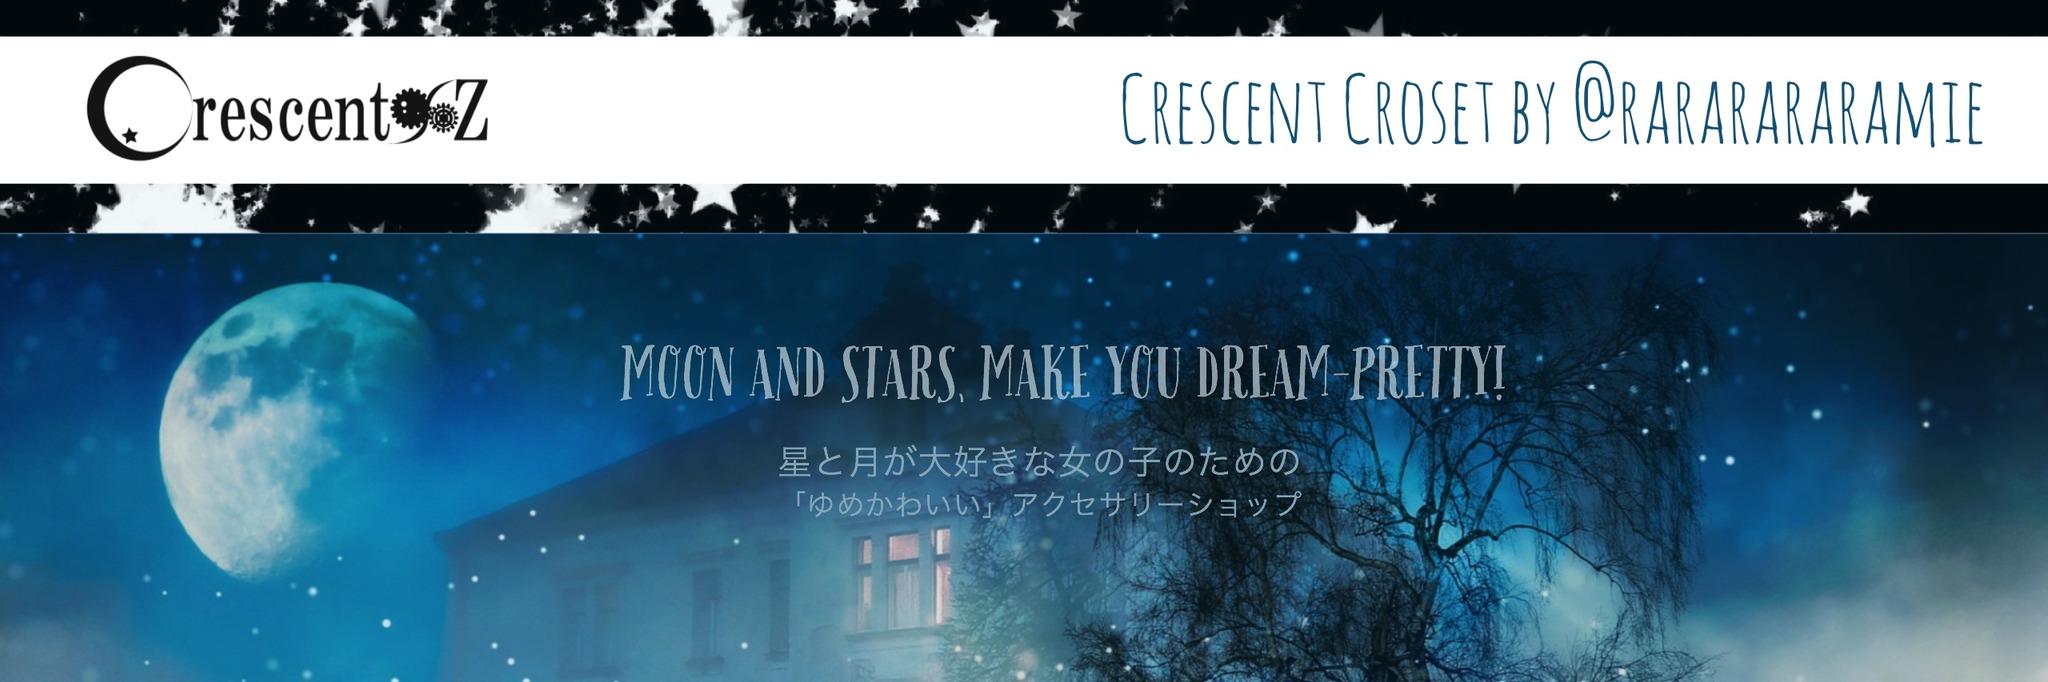 Crescent96z - 海と星と月が大好きな女の子のための「ゆめかわいい」オールハンドメイドアクセサリーショップ